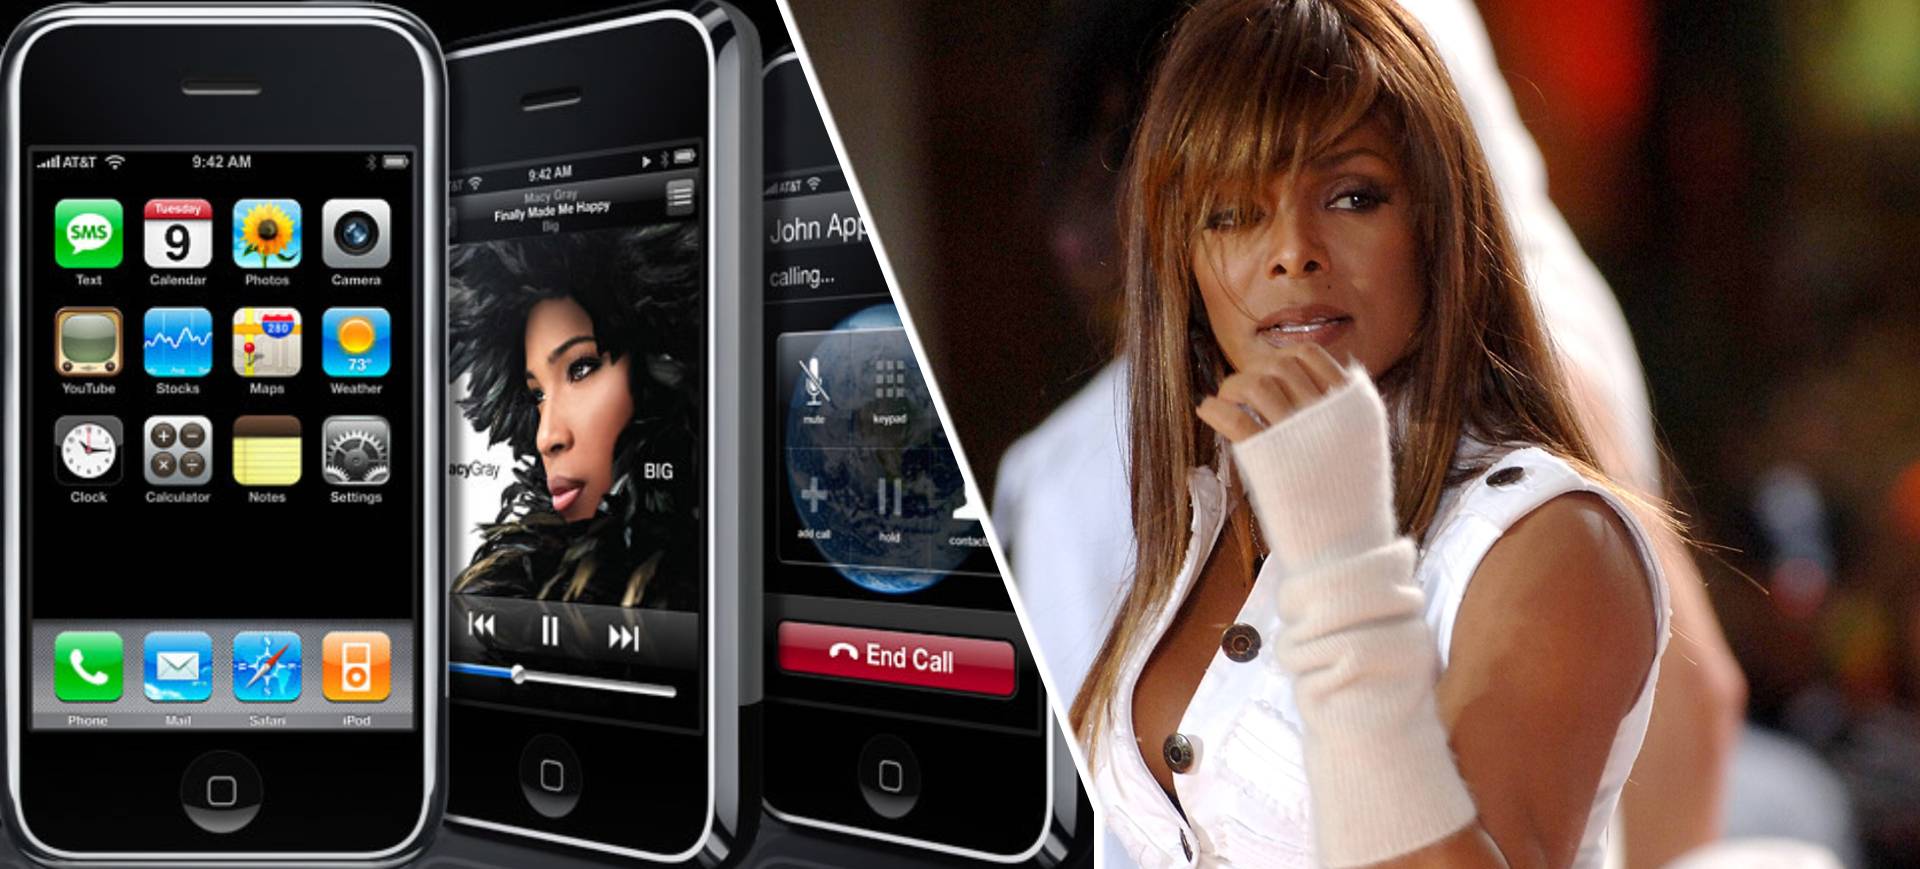 Destaques da Semana: iPhone de R$ 180 mil, Janet Jackson quebrando o Windows e mais!